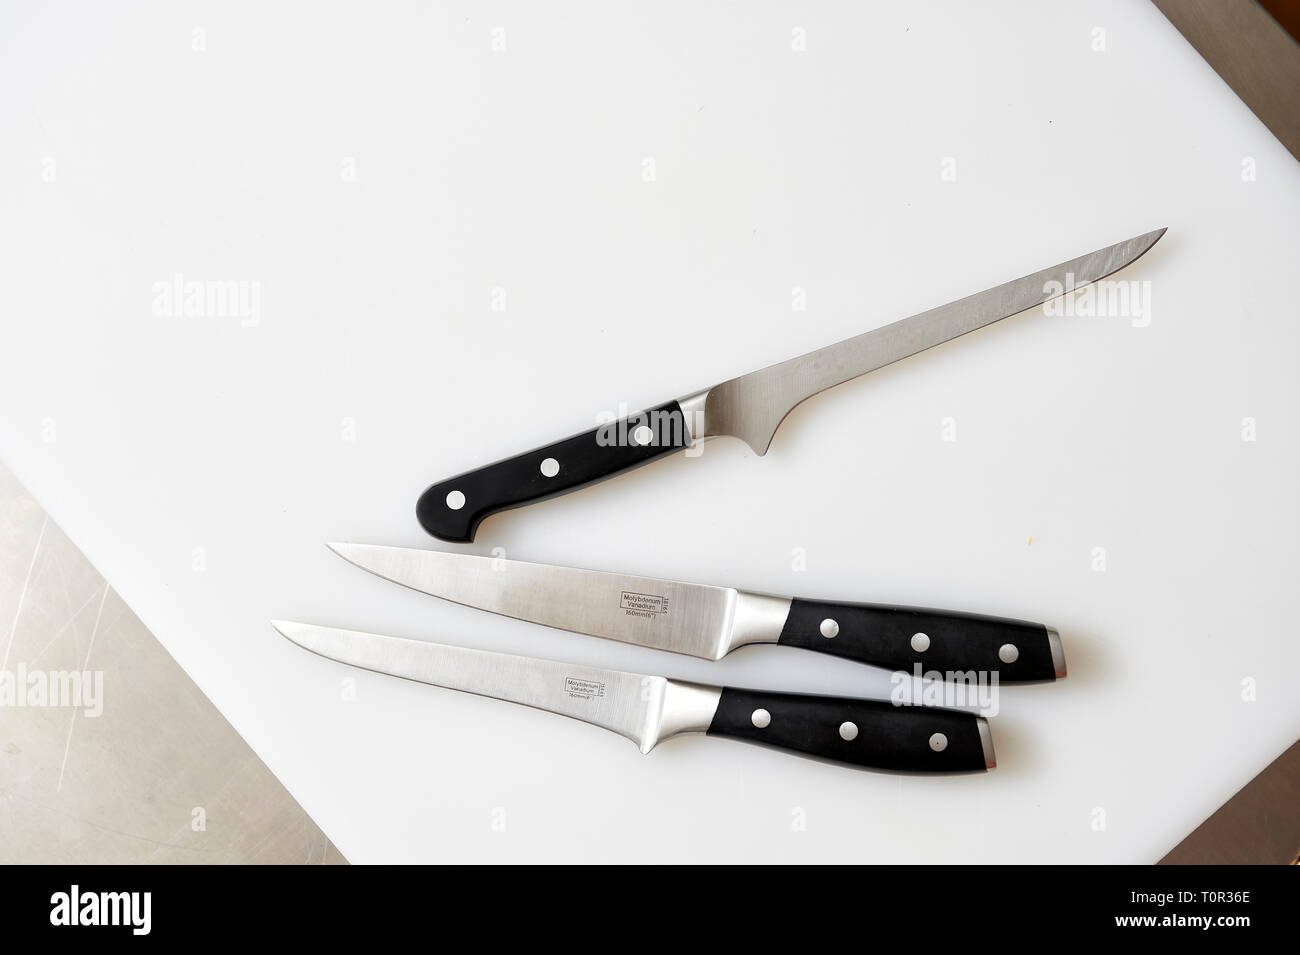 Auf einem weissen Kuechenbrett liegen 3 unterschiedliche Messer fuer die verschiedenen Verarbeitungsschritte in der Kueche. Stock Photo